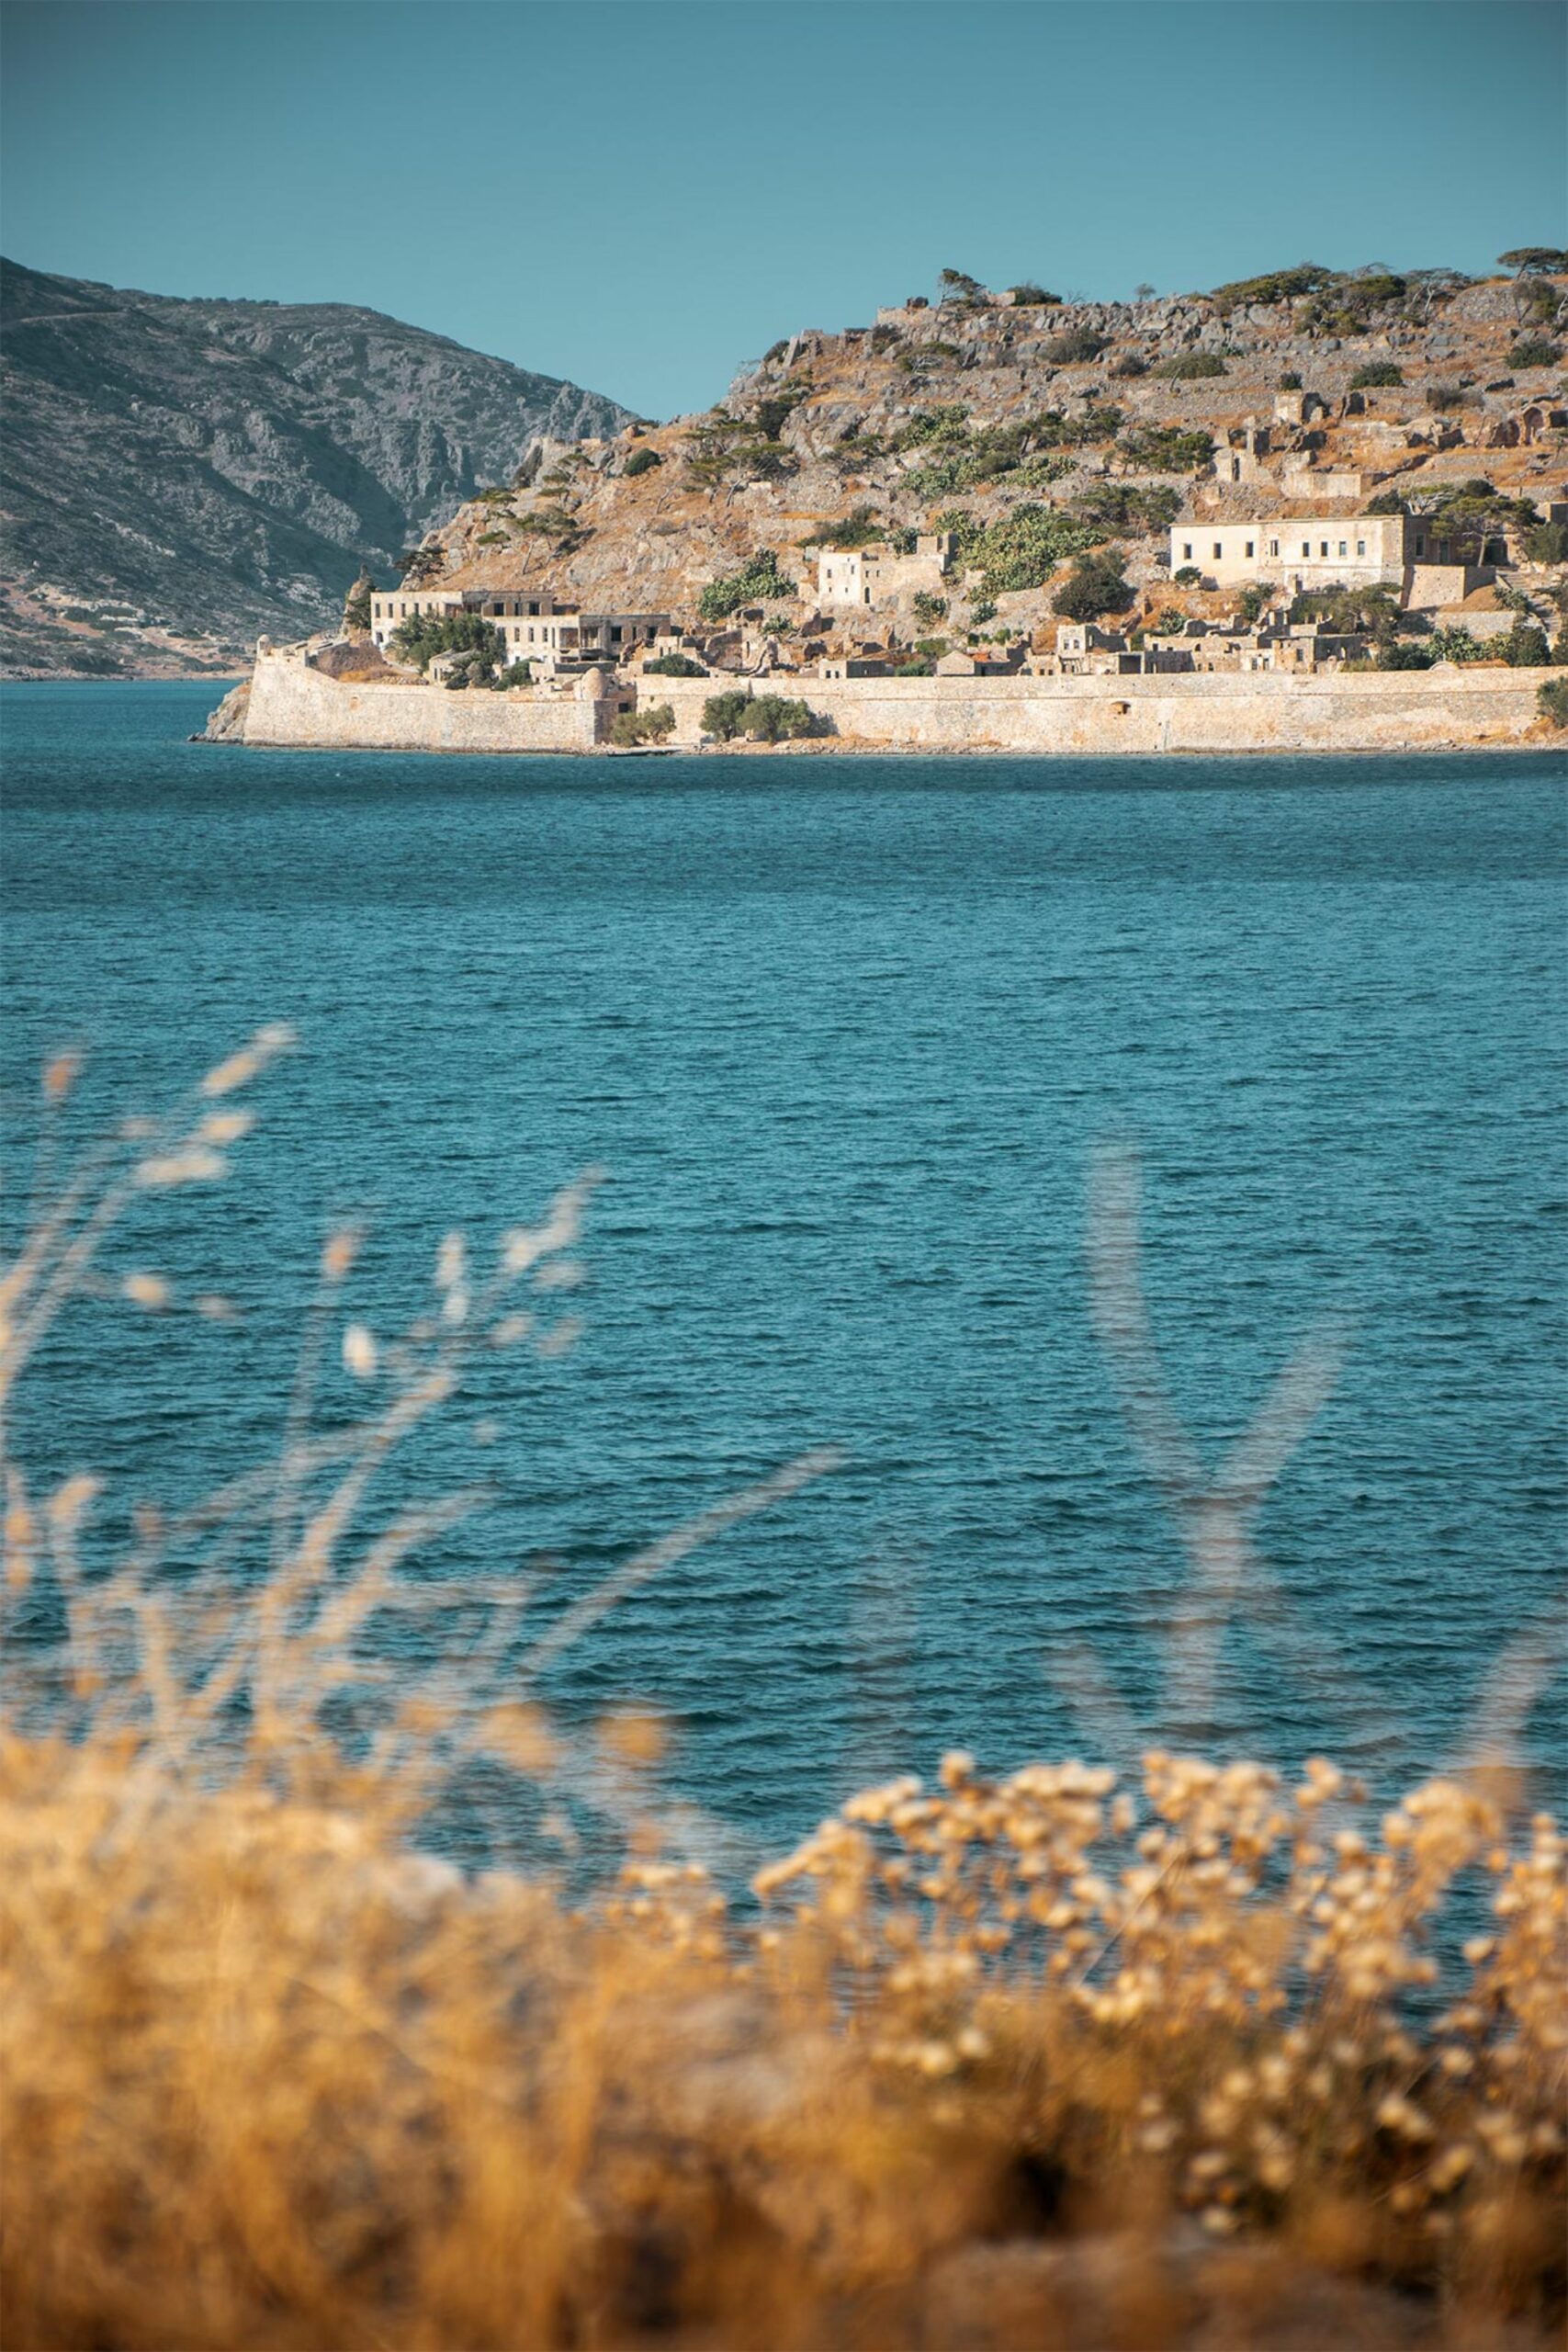 tourism in crete statistics